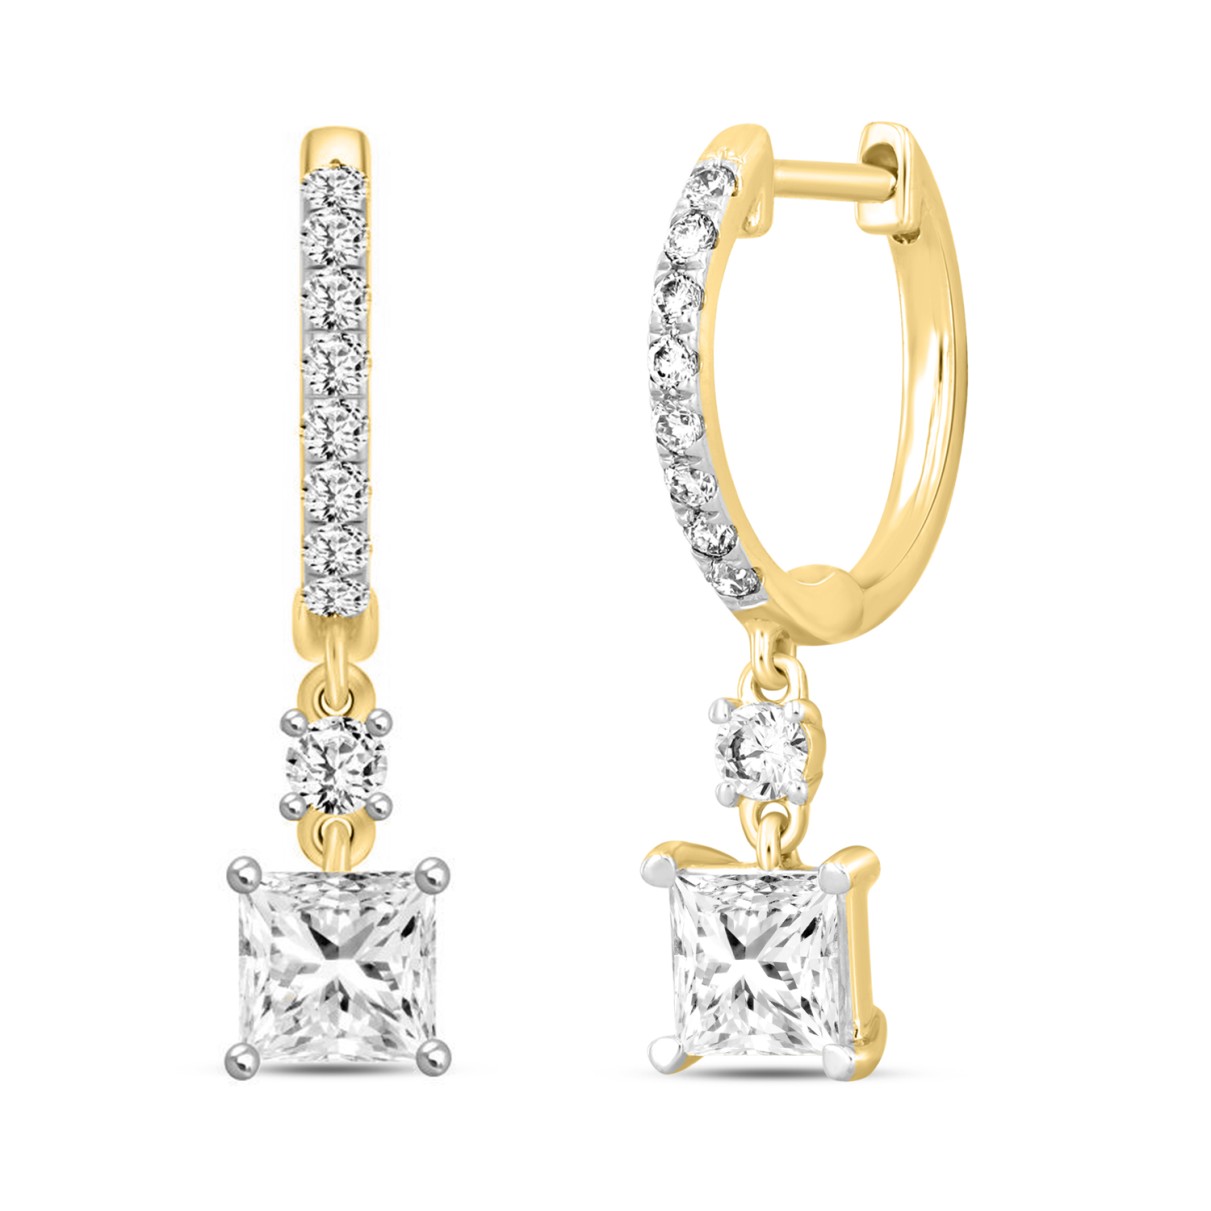 LADIES EARRINGS  1 1/4CT PRINCESS/ROUND DIAMOND 14K YELLOW GOLD (CENTER STONE PRINCESS DIAMOND 1CT)